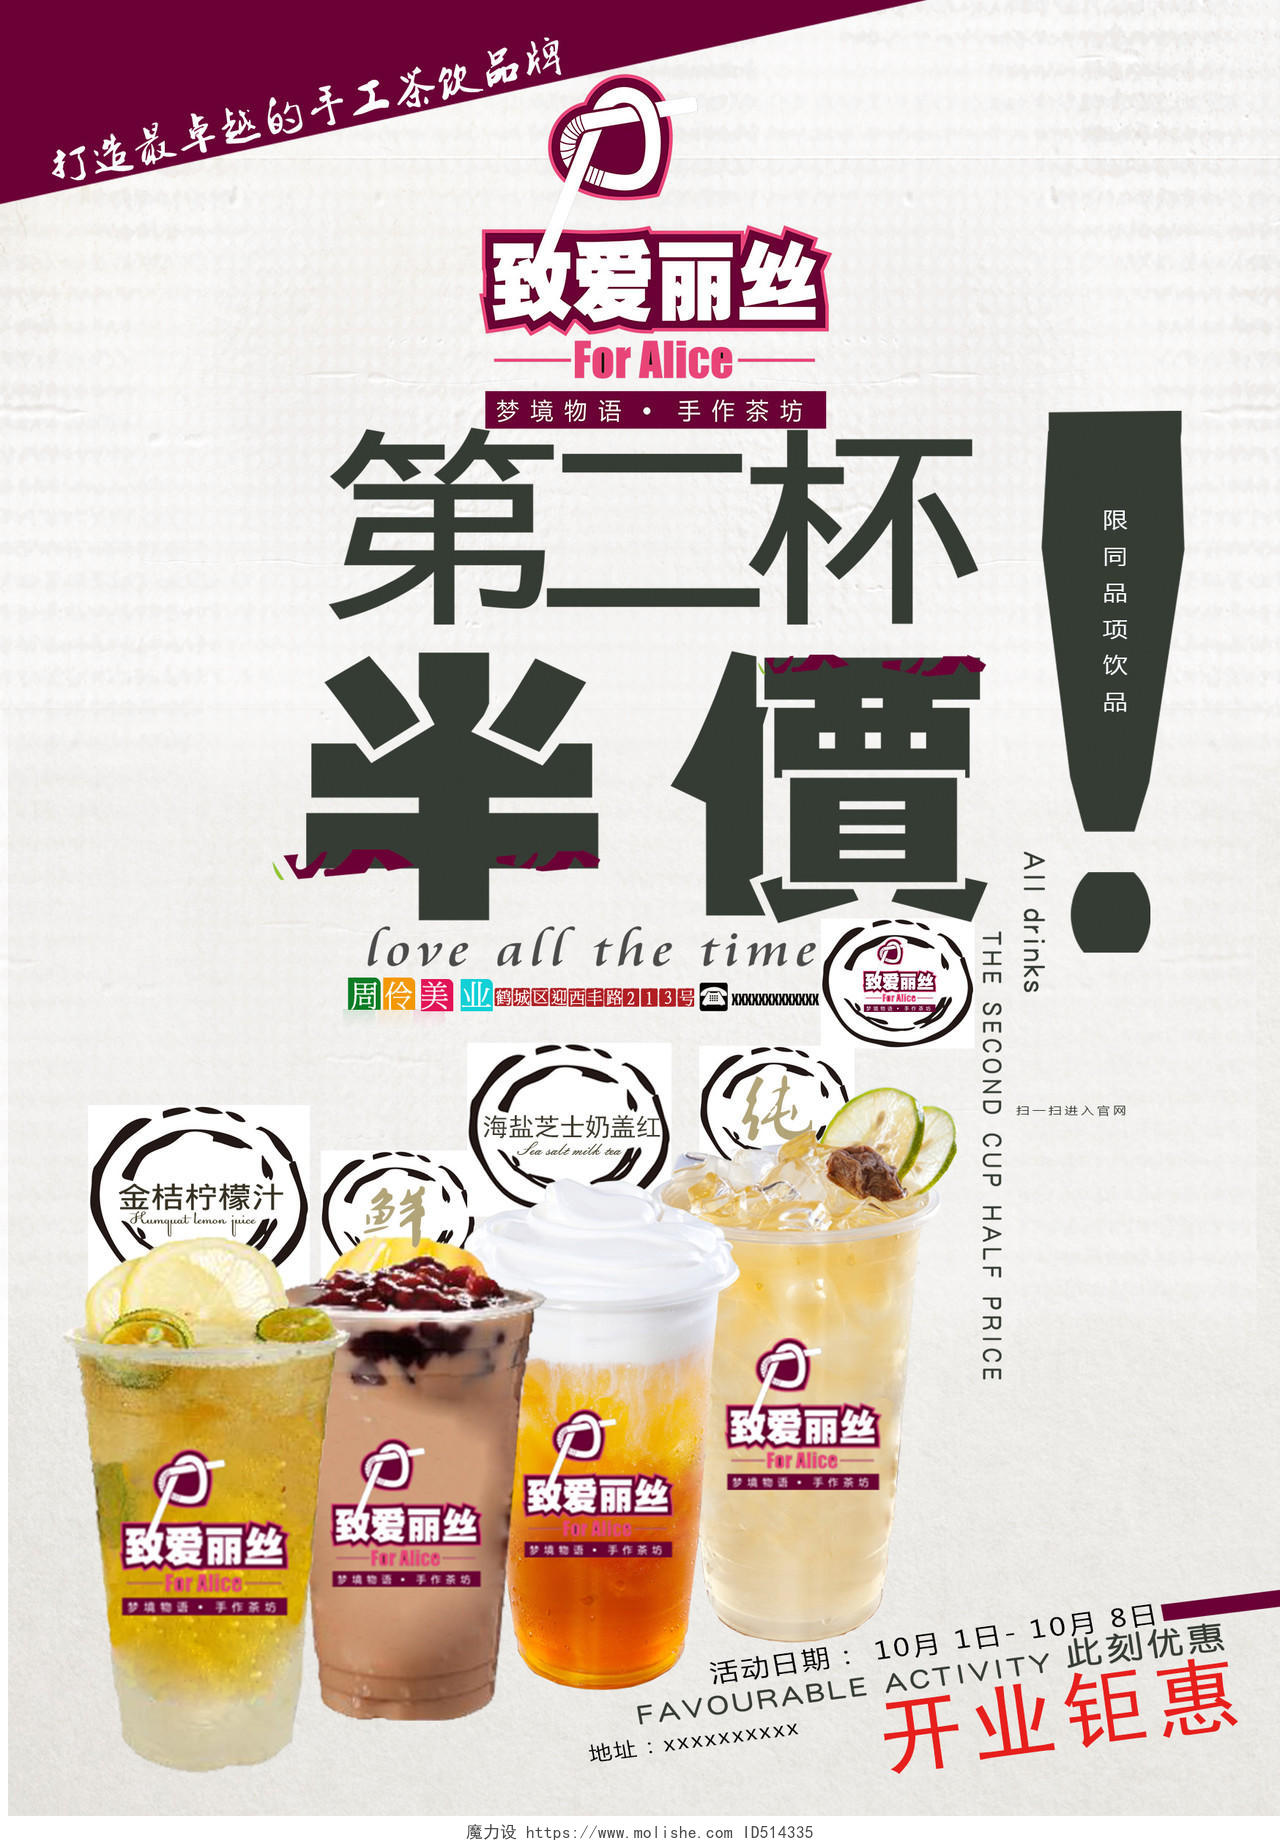 第二杯半价饮料果汁奶茶海报设计